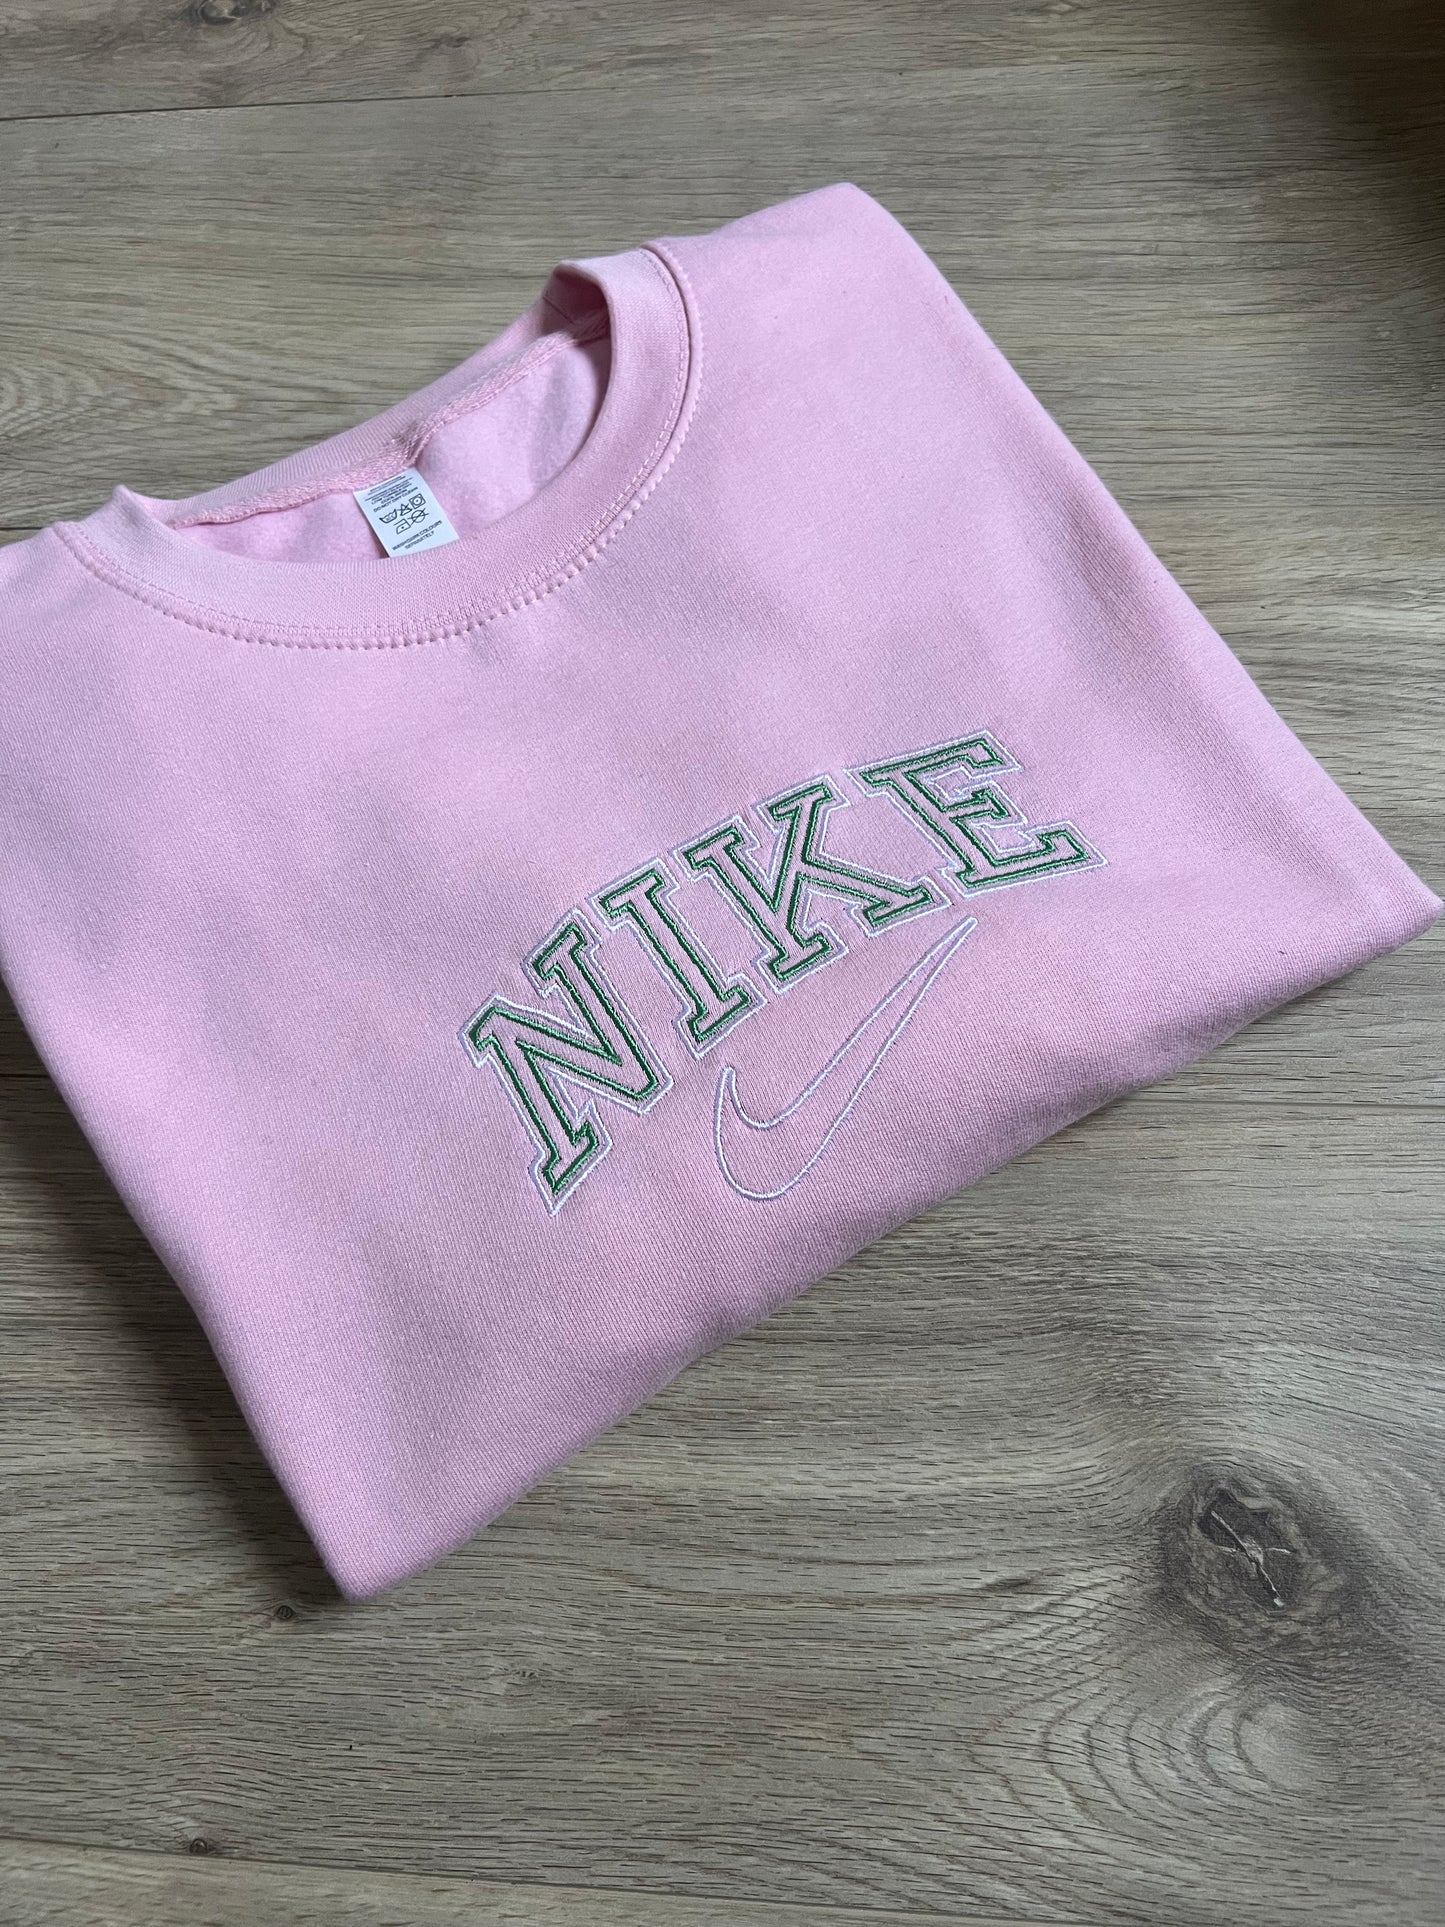 Vintage style ‘Nike’ embroidered sweatshirt